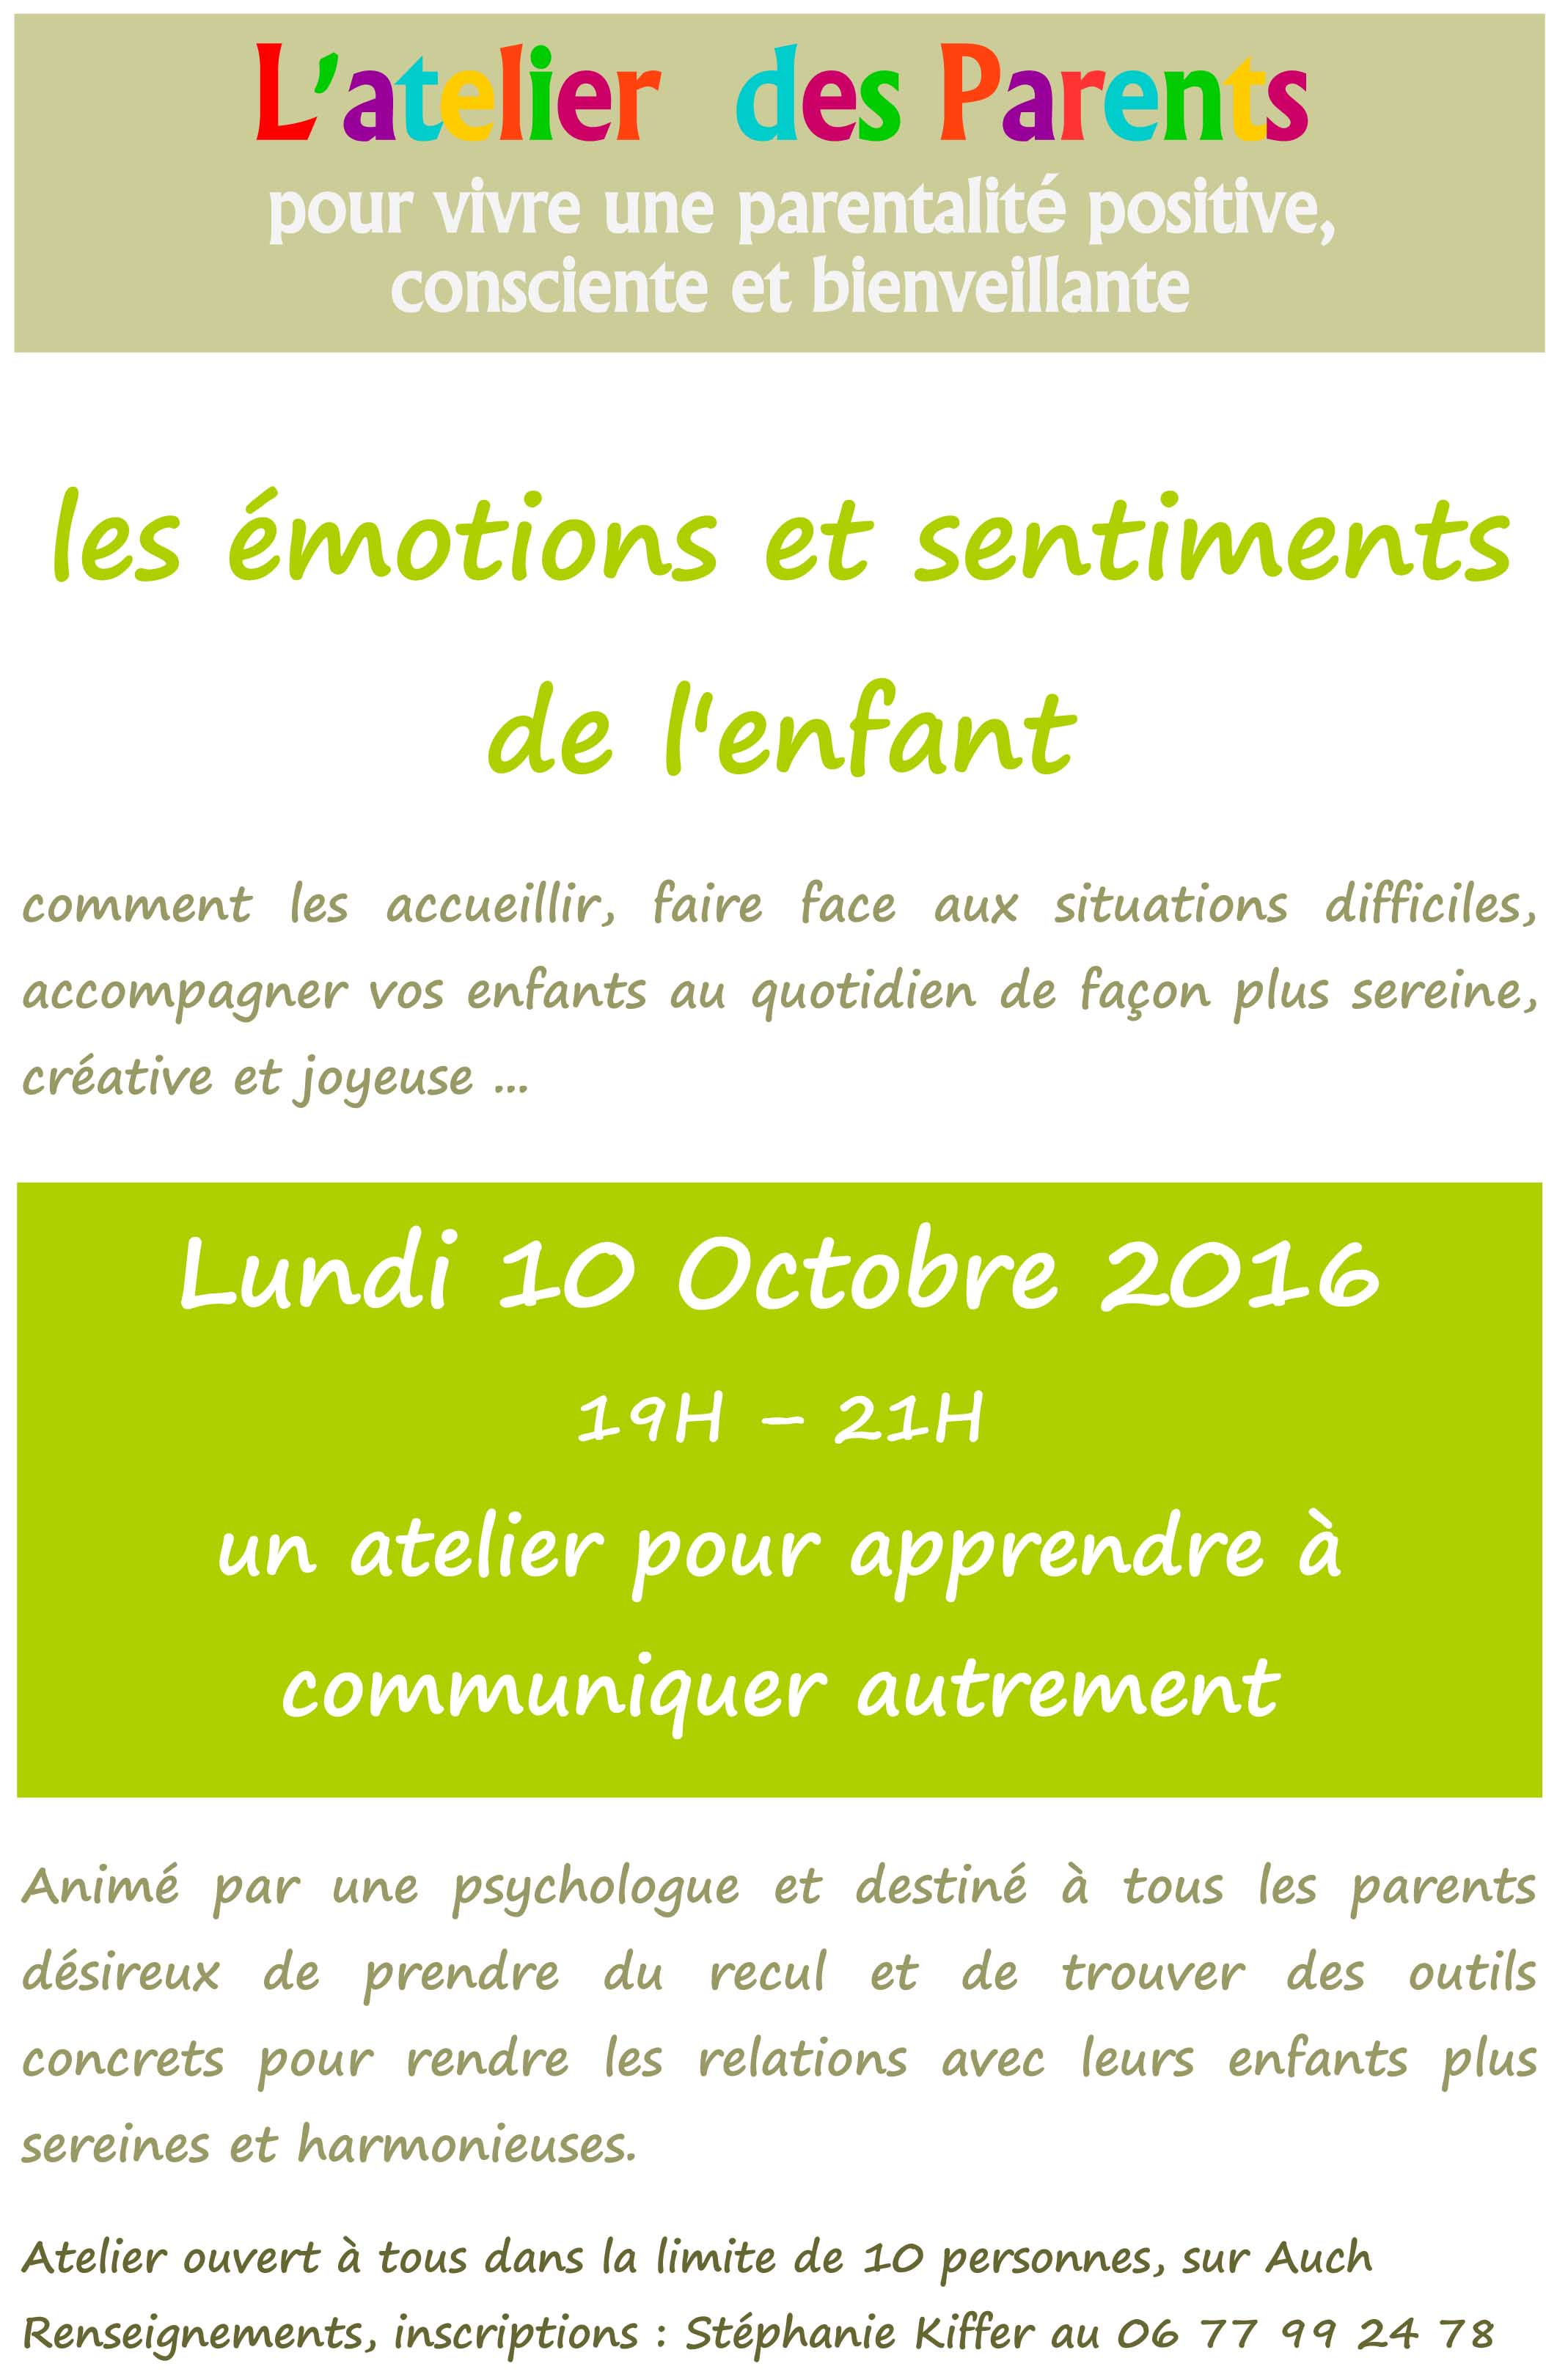 atelier-parents-affiche-1-sentiments-et-emotions-vert